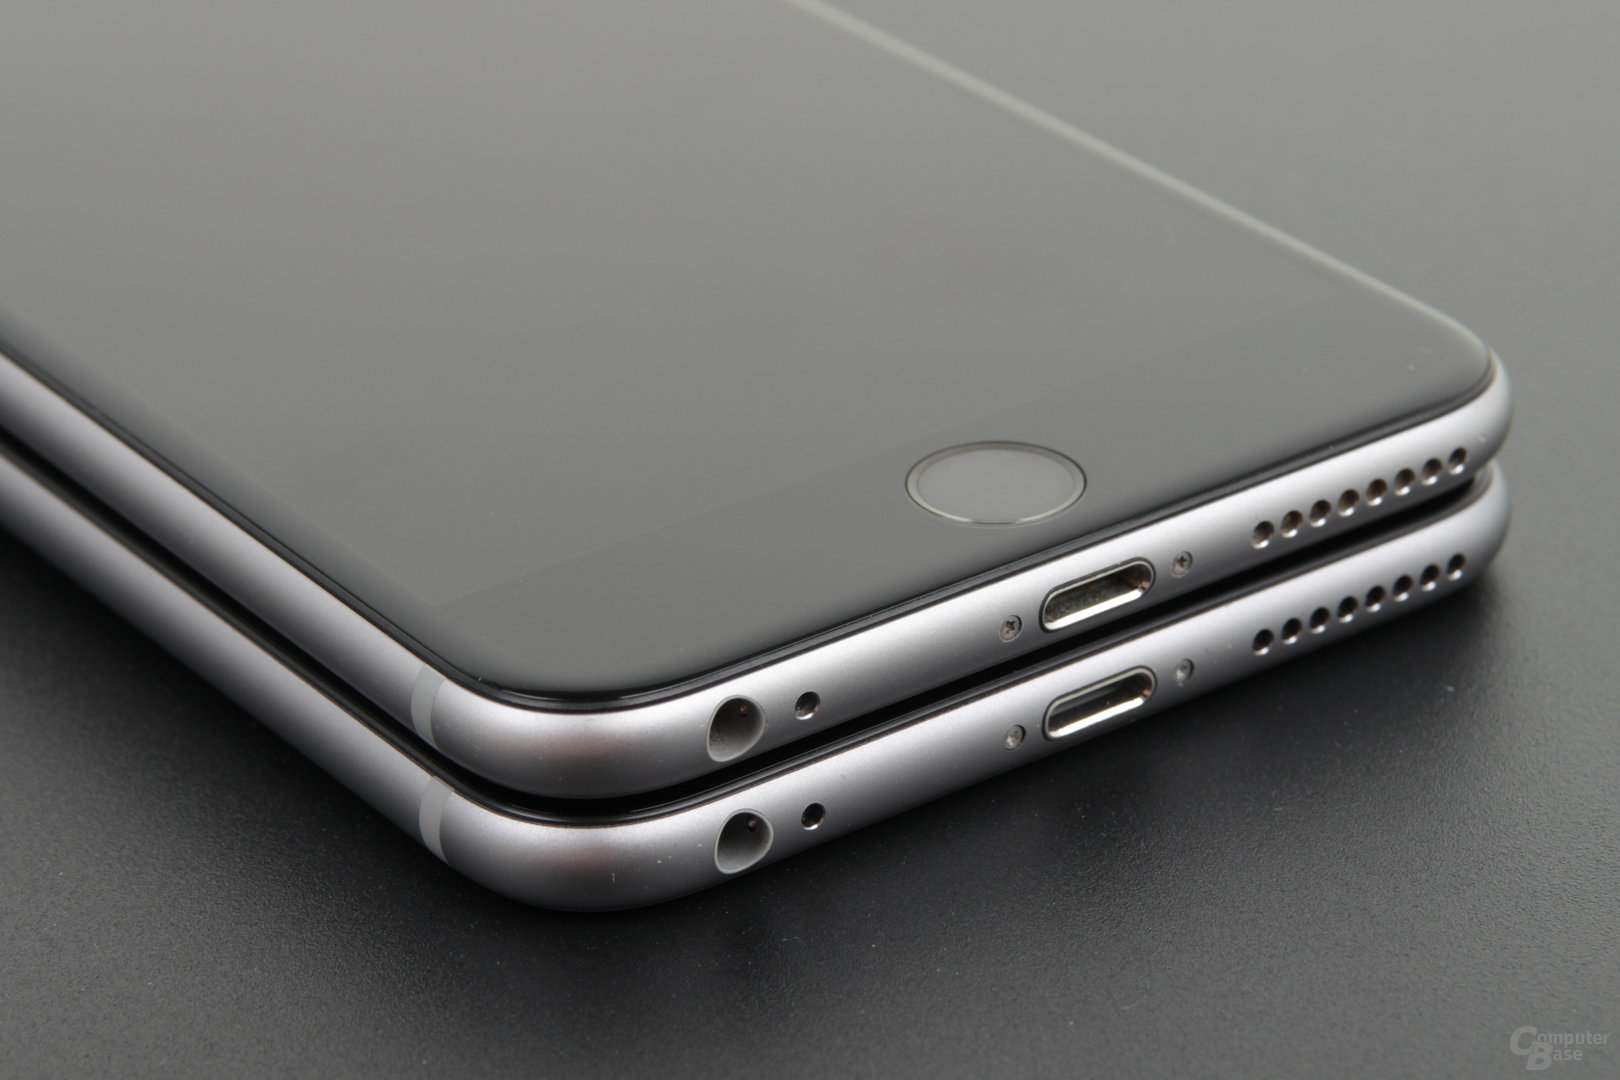 Apple iPhone 6 Plus (oben) und iPhone 6s Plus (unten)